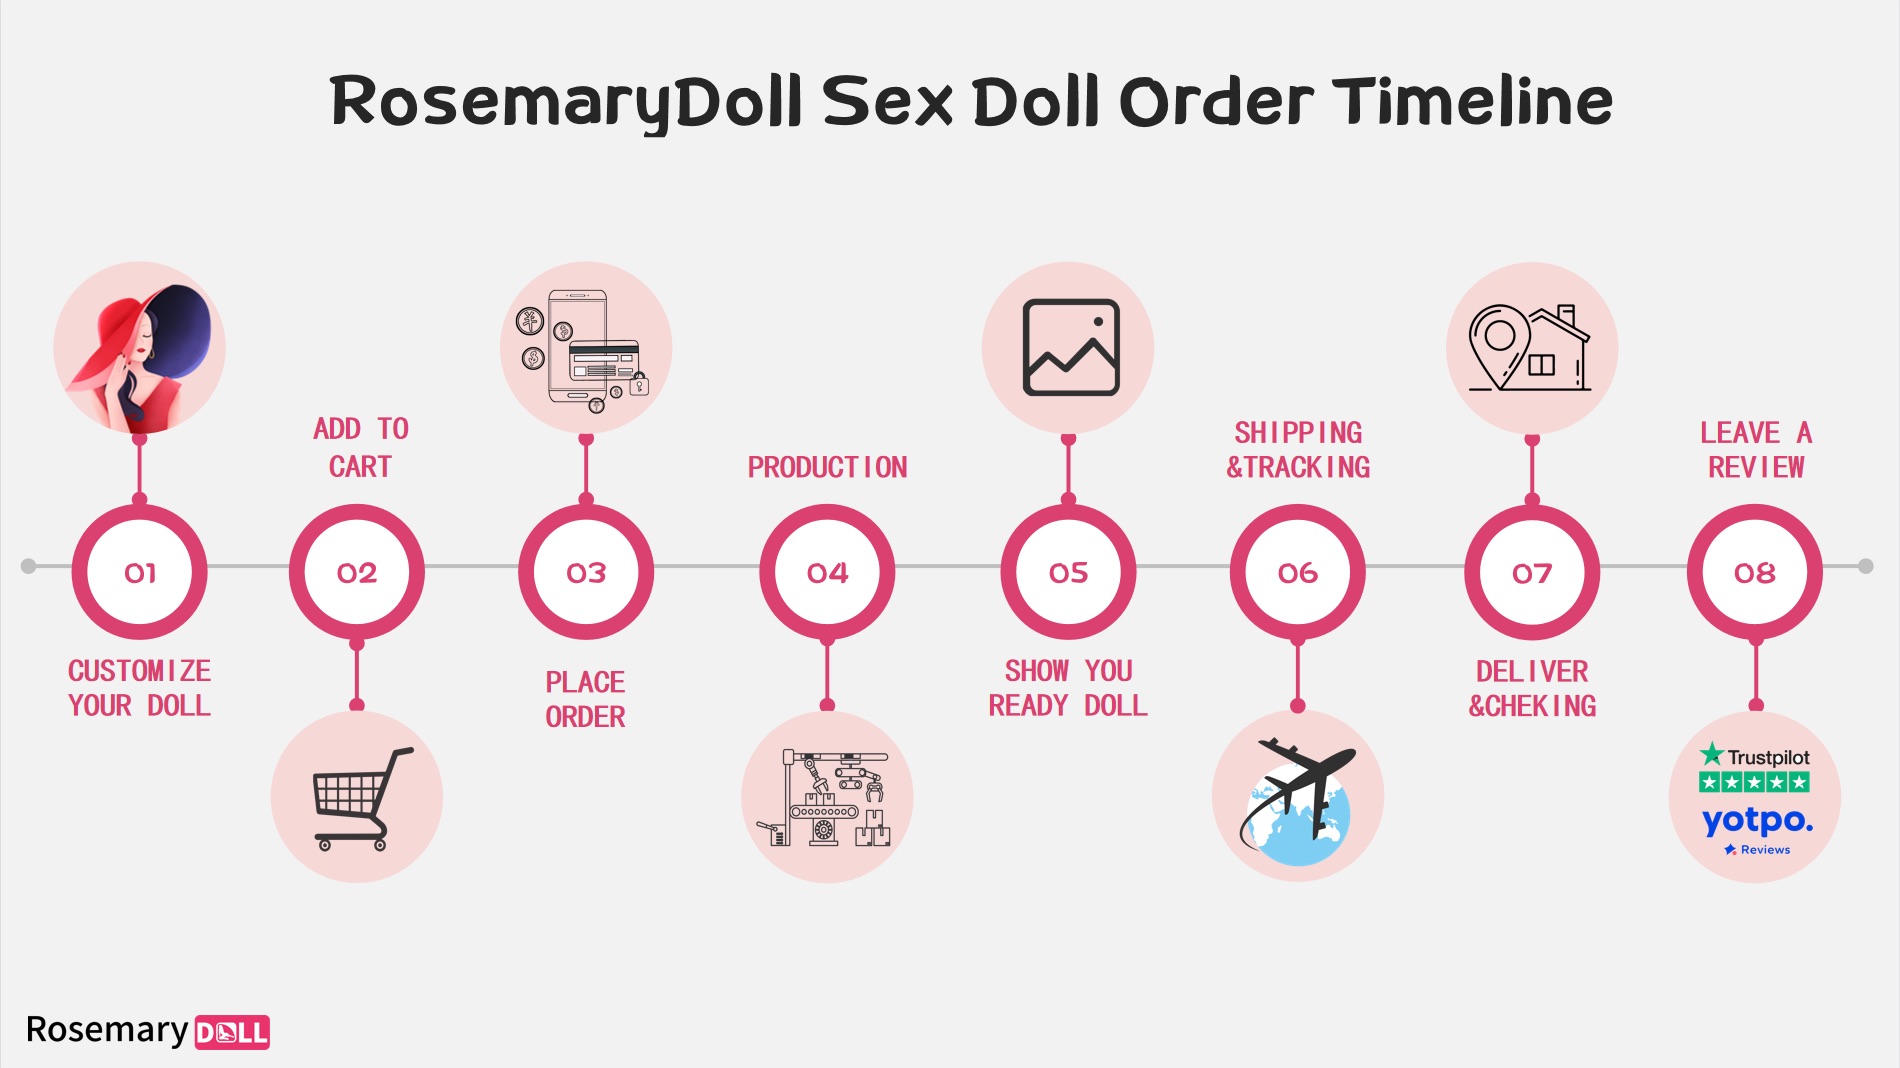 Chronologie des commandes de poupées sexuelles de RosemaryDoll